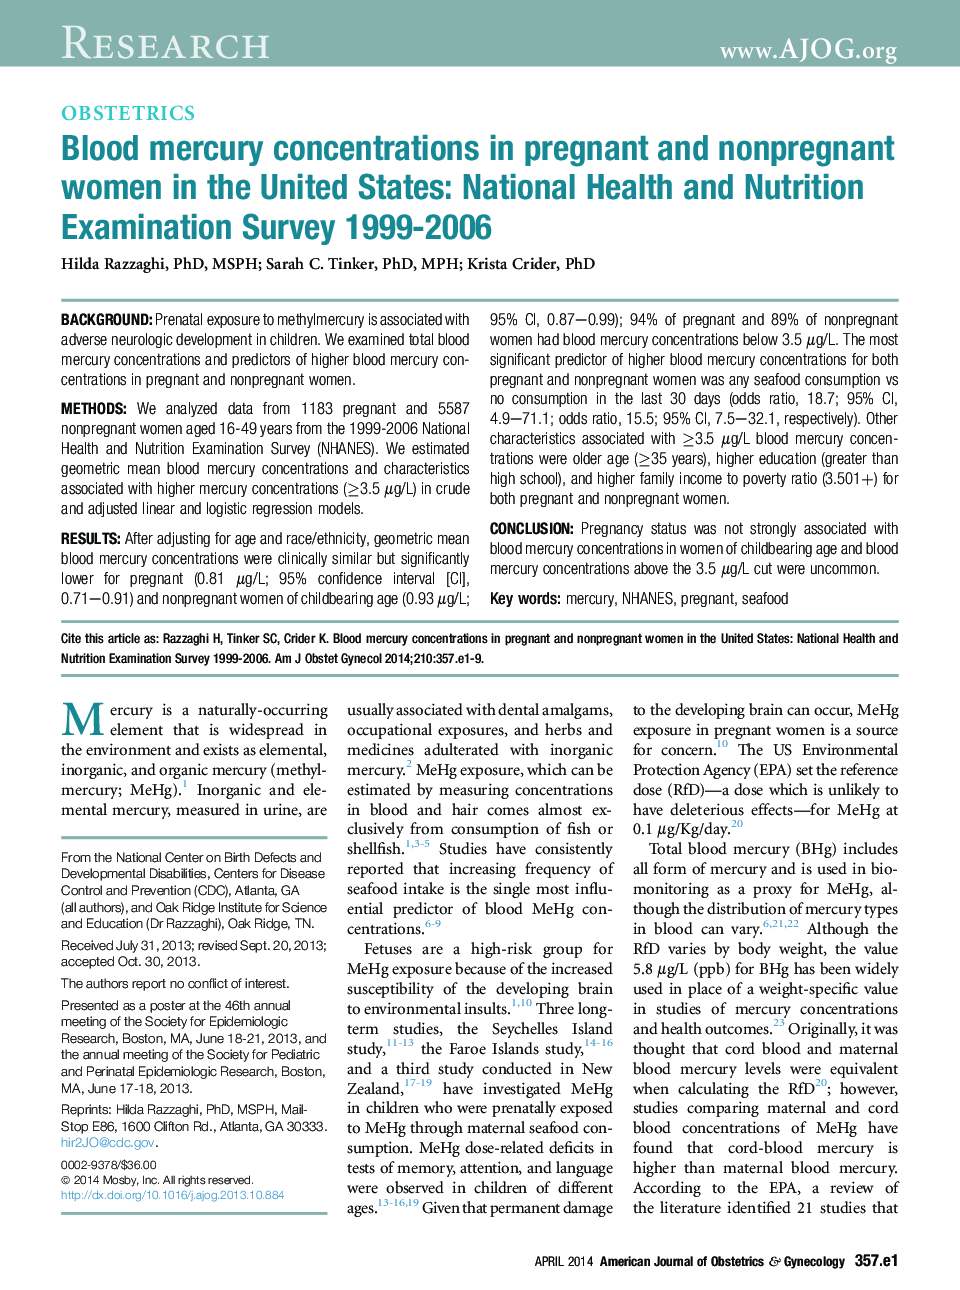 غلظت جیوه خون در زنان باردار و غیر باردار در ایالات متحده: بررسی ملی بهداشت و تغذیه سال 1999-2006 